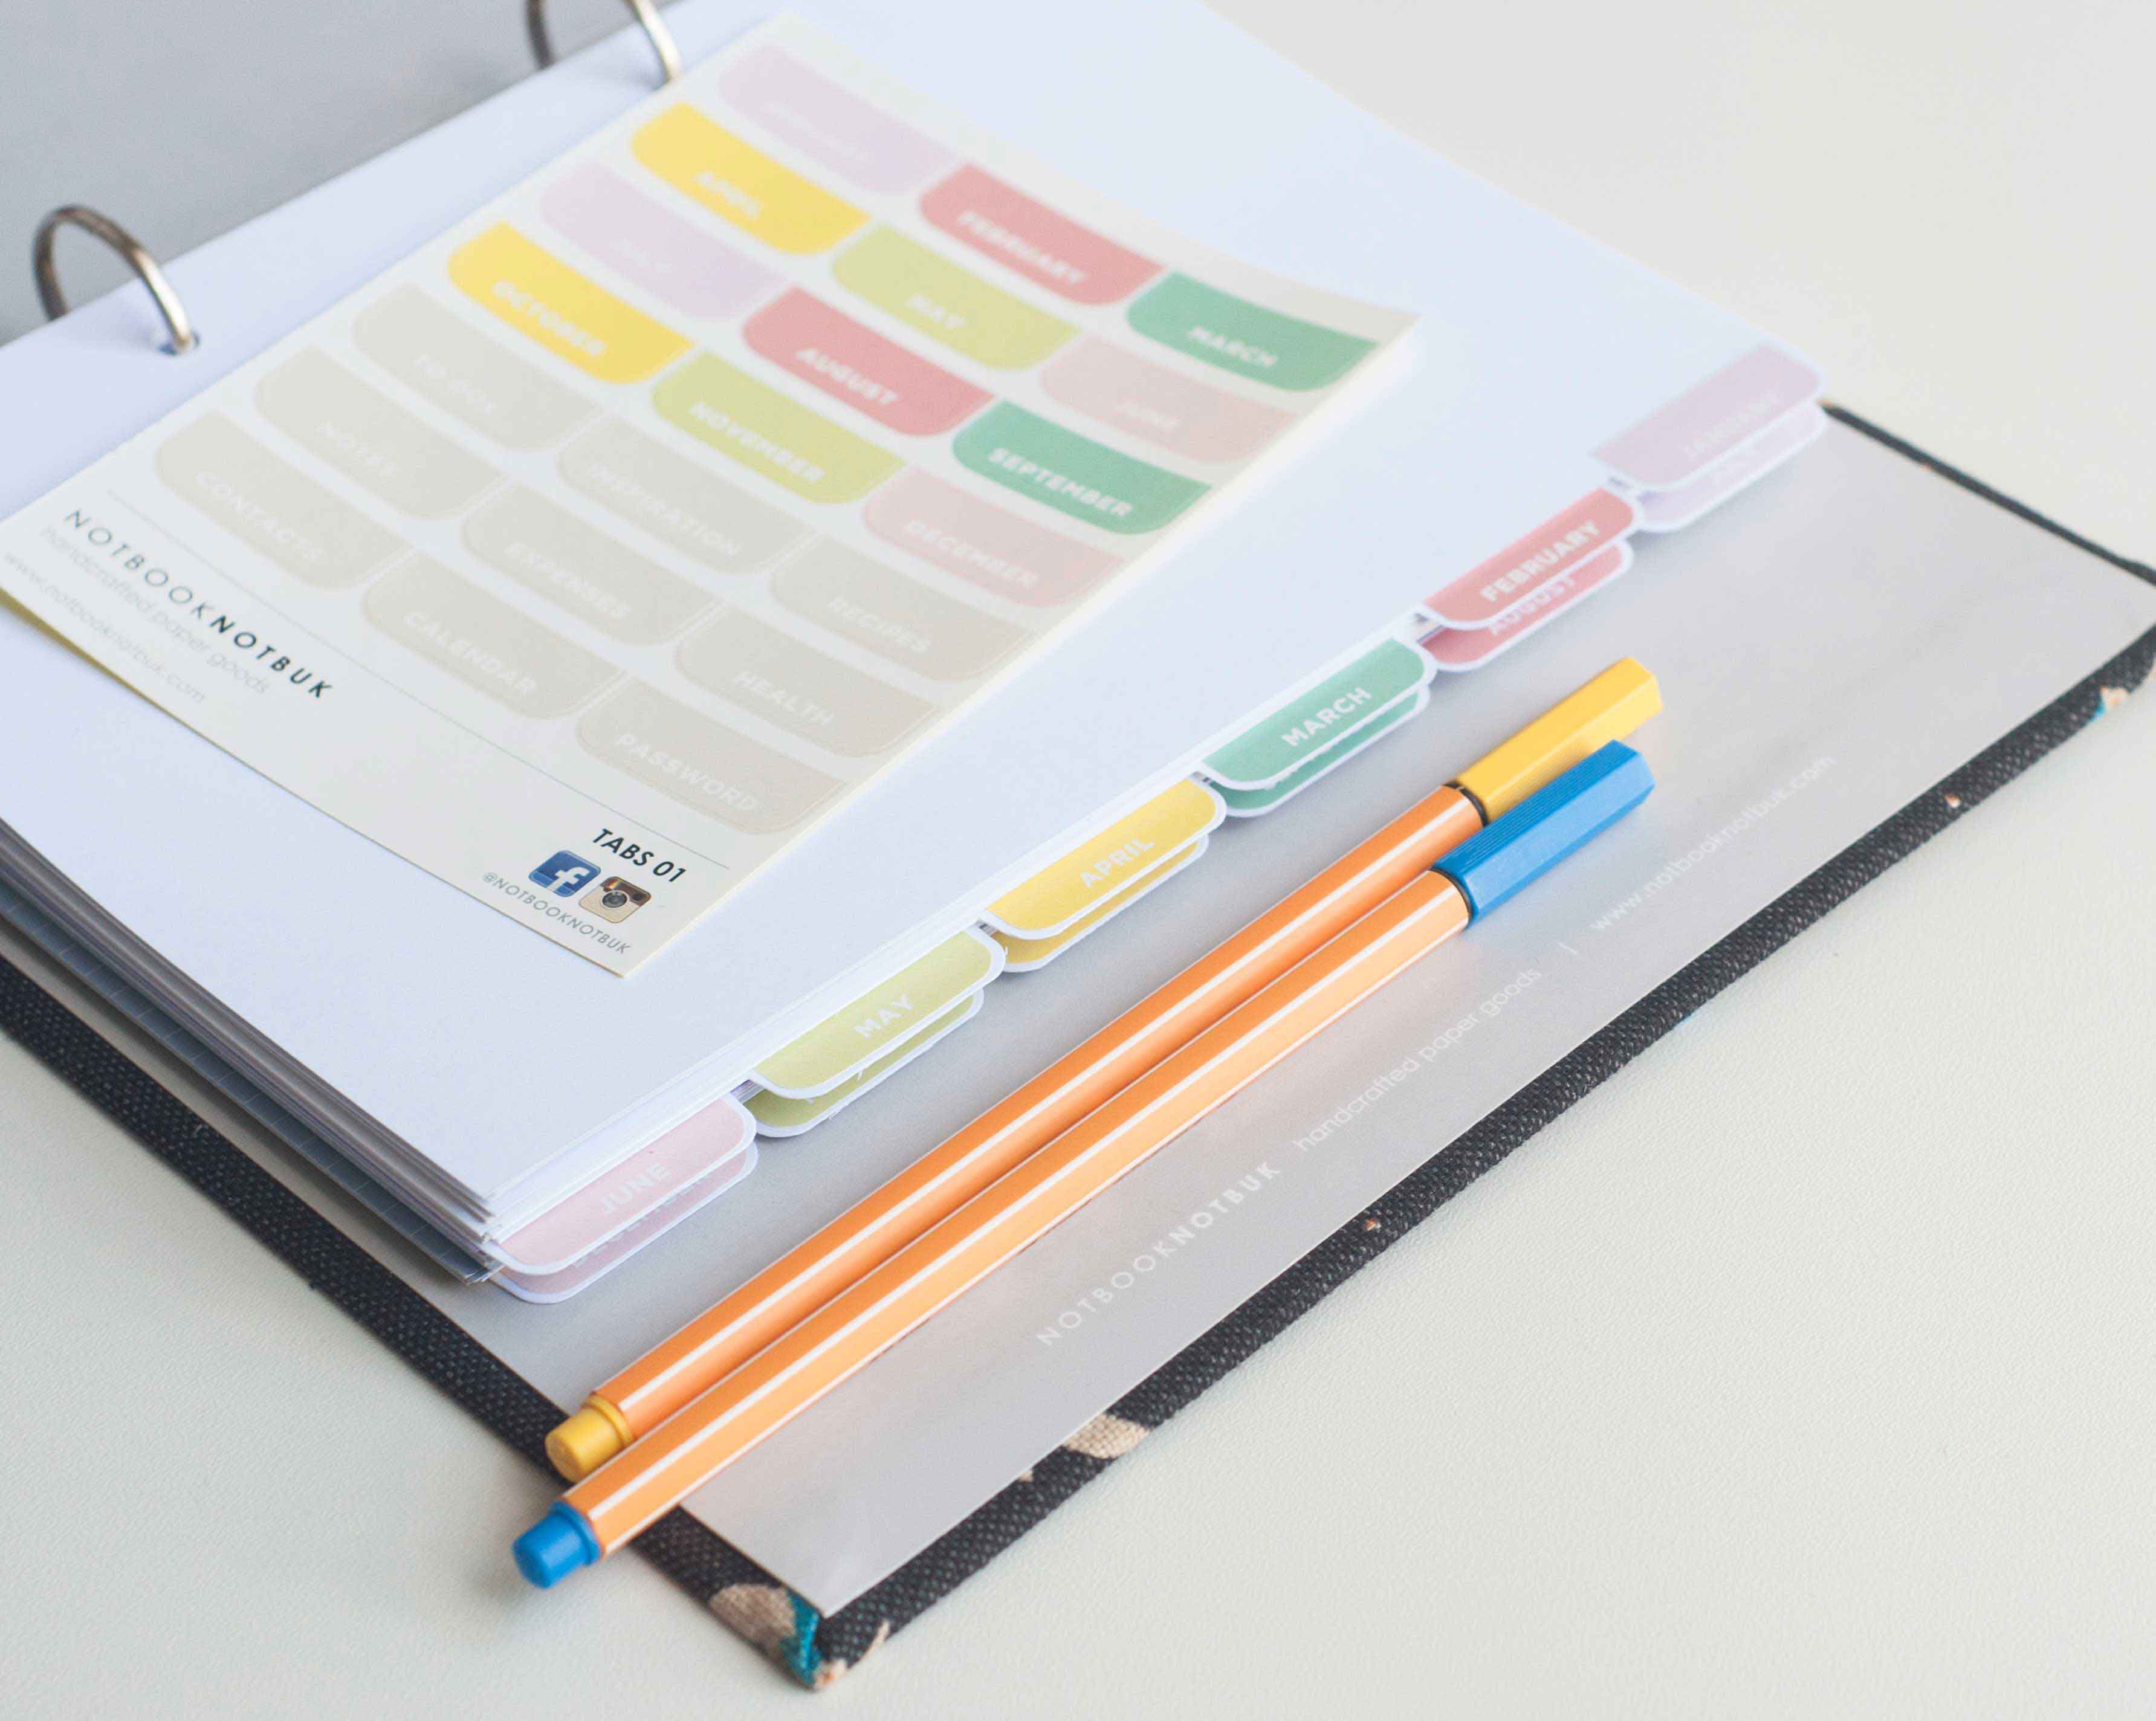 binder clipart notebook binder